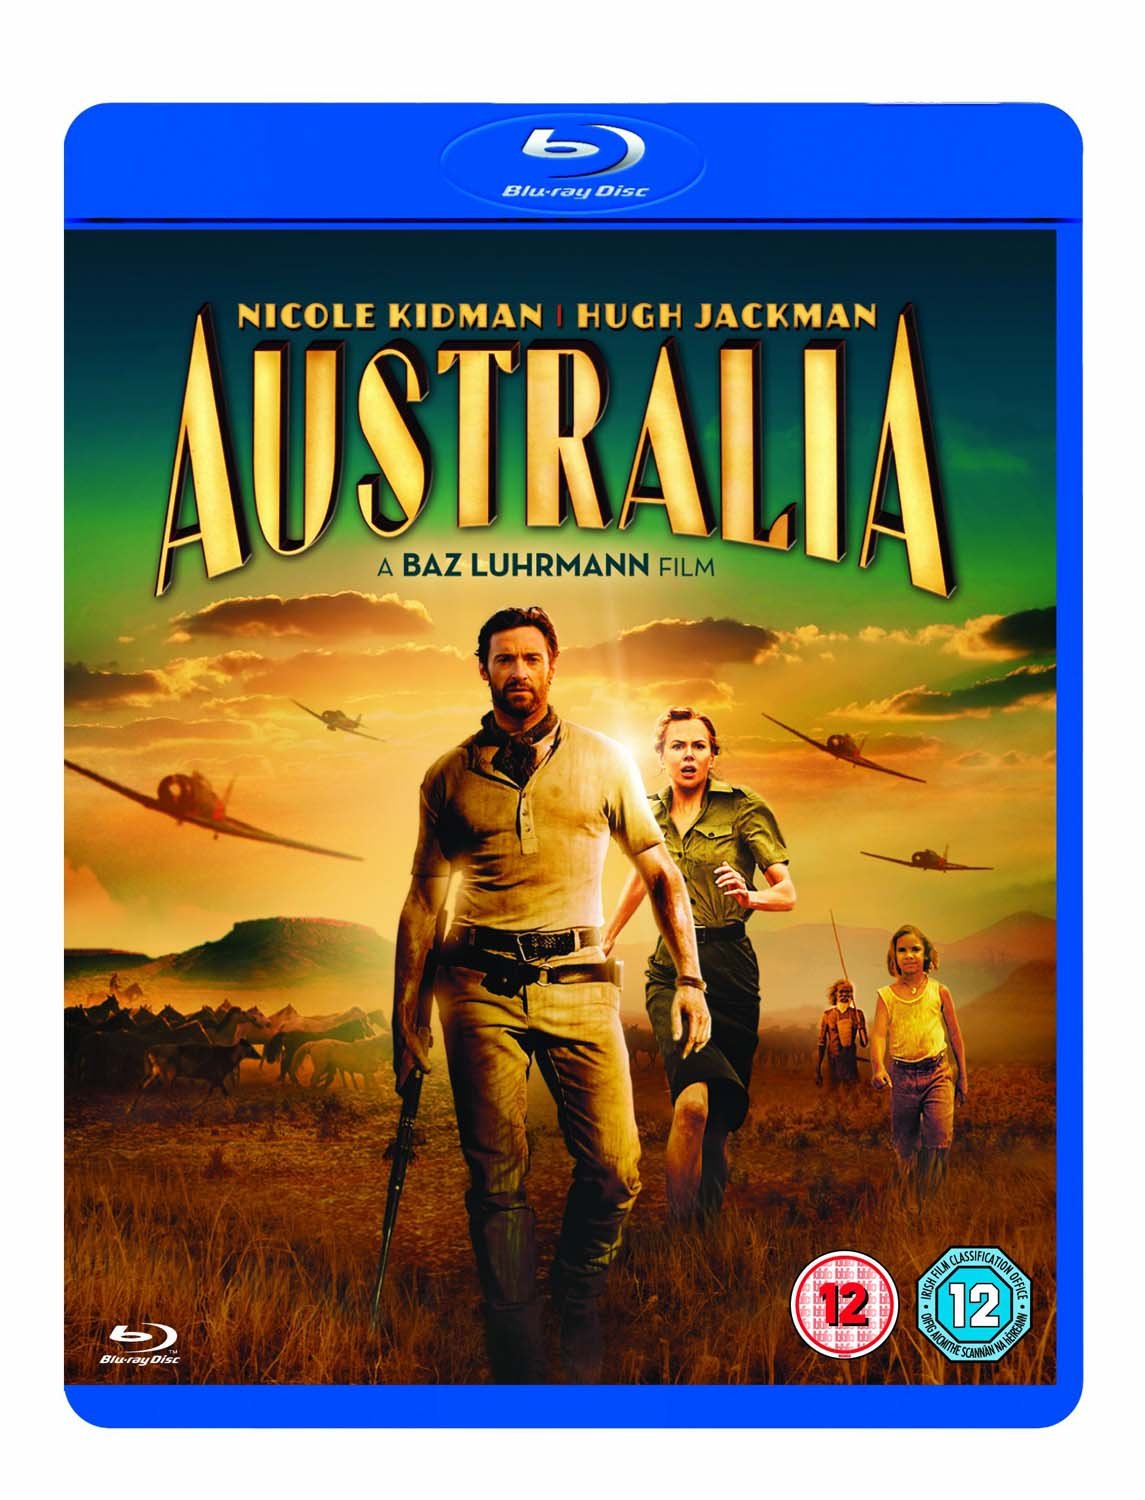 Stiahni si HD Filmy Australie (2008)(CZ/HU/EN/PL)[1080p] = CSFD 72%